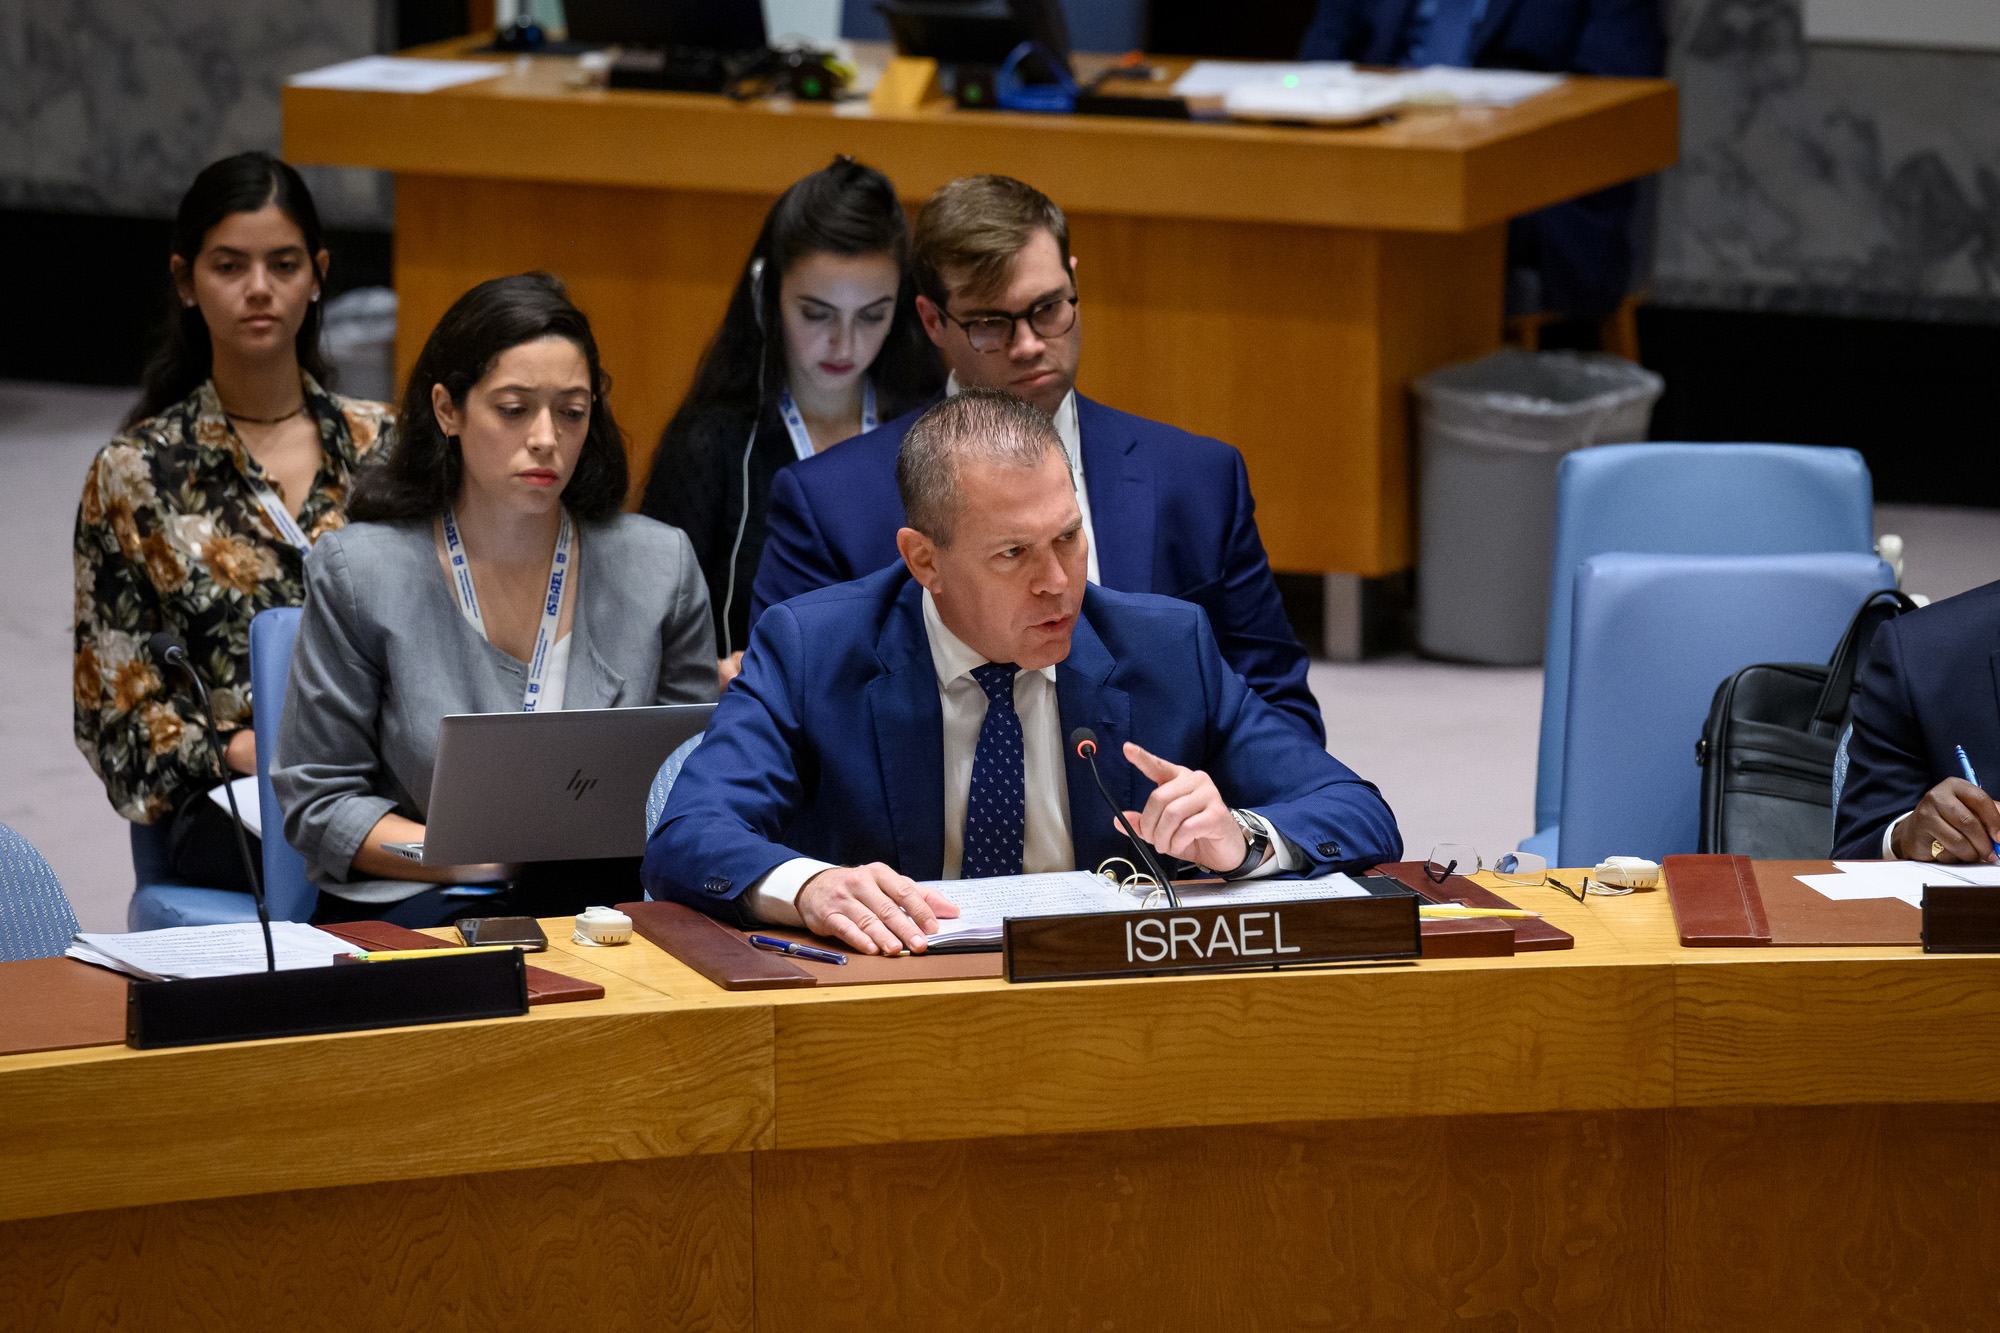 جلعاد إردان، الممثل الدائم لإسرائيل لدى الأمم المتحدة، يلقي كلمة أمام جلسة مجلس الأمن بشأن الوضع في الشرق الأوسط، بما في ذلك قضية فلسطين.